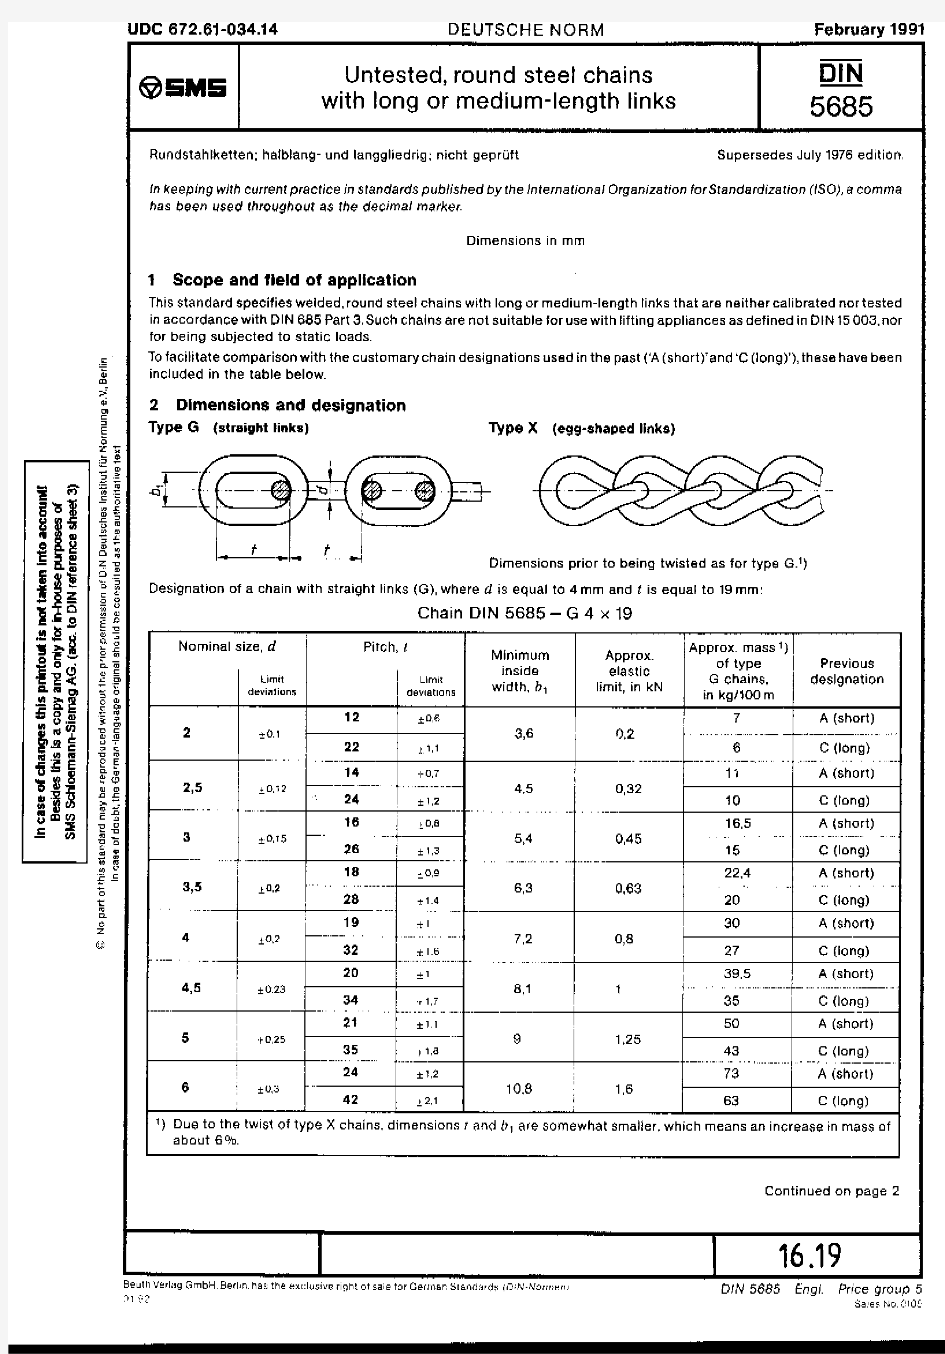 DIN_5685-1991《长或中等长度链条的未经试验的圆钢链》(英文版)